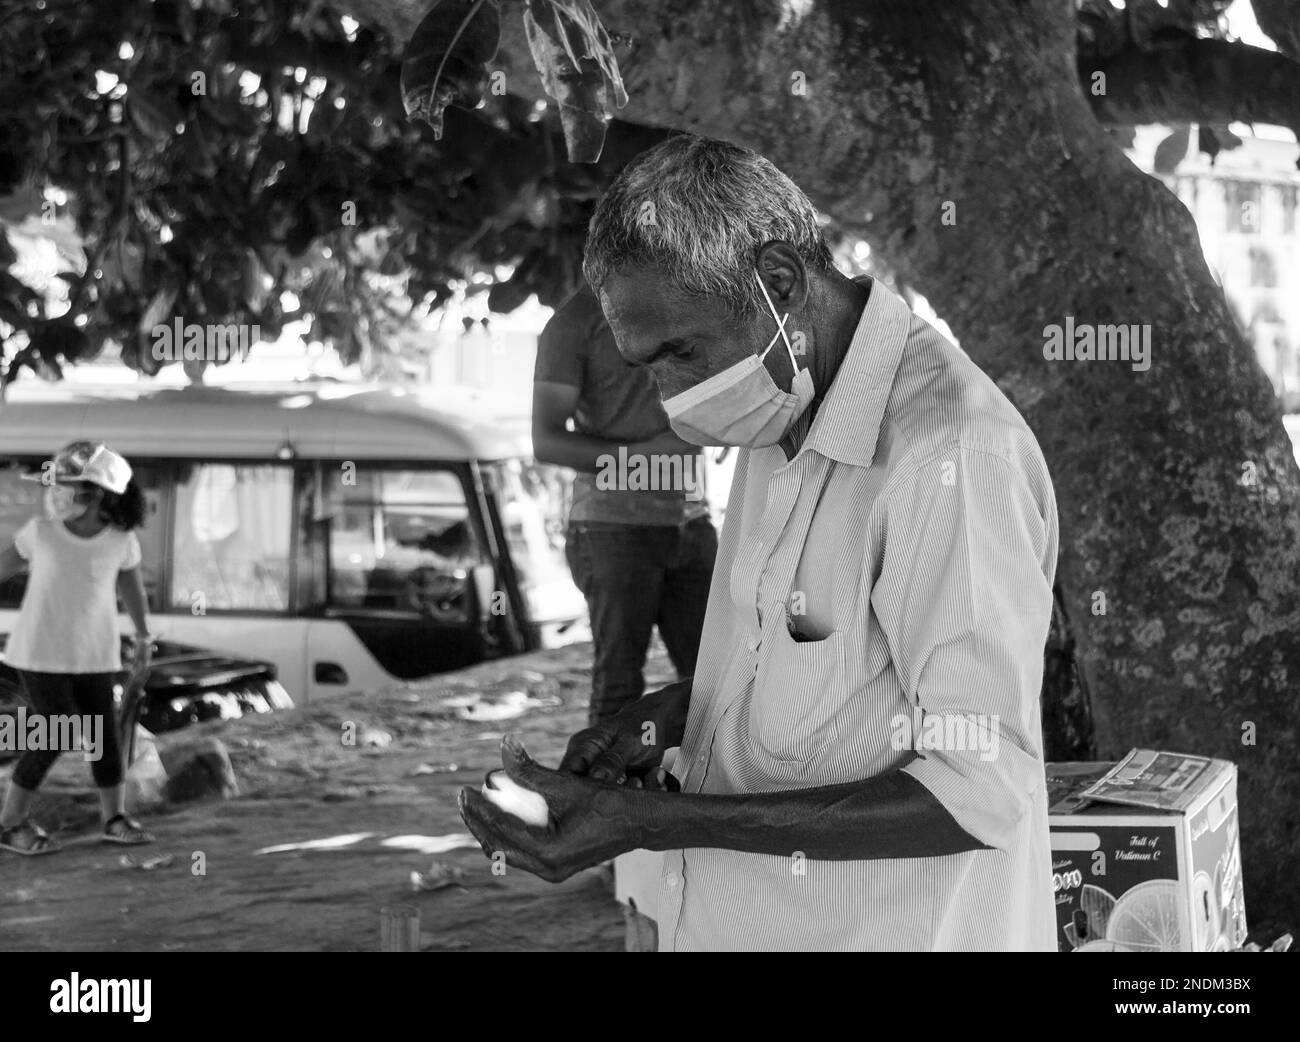 Daily life of an Asian. Sri Lanka Stock Photo